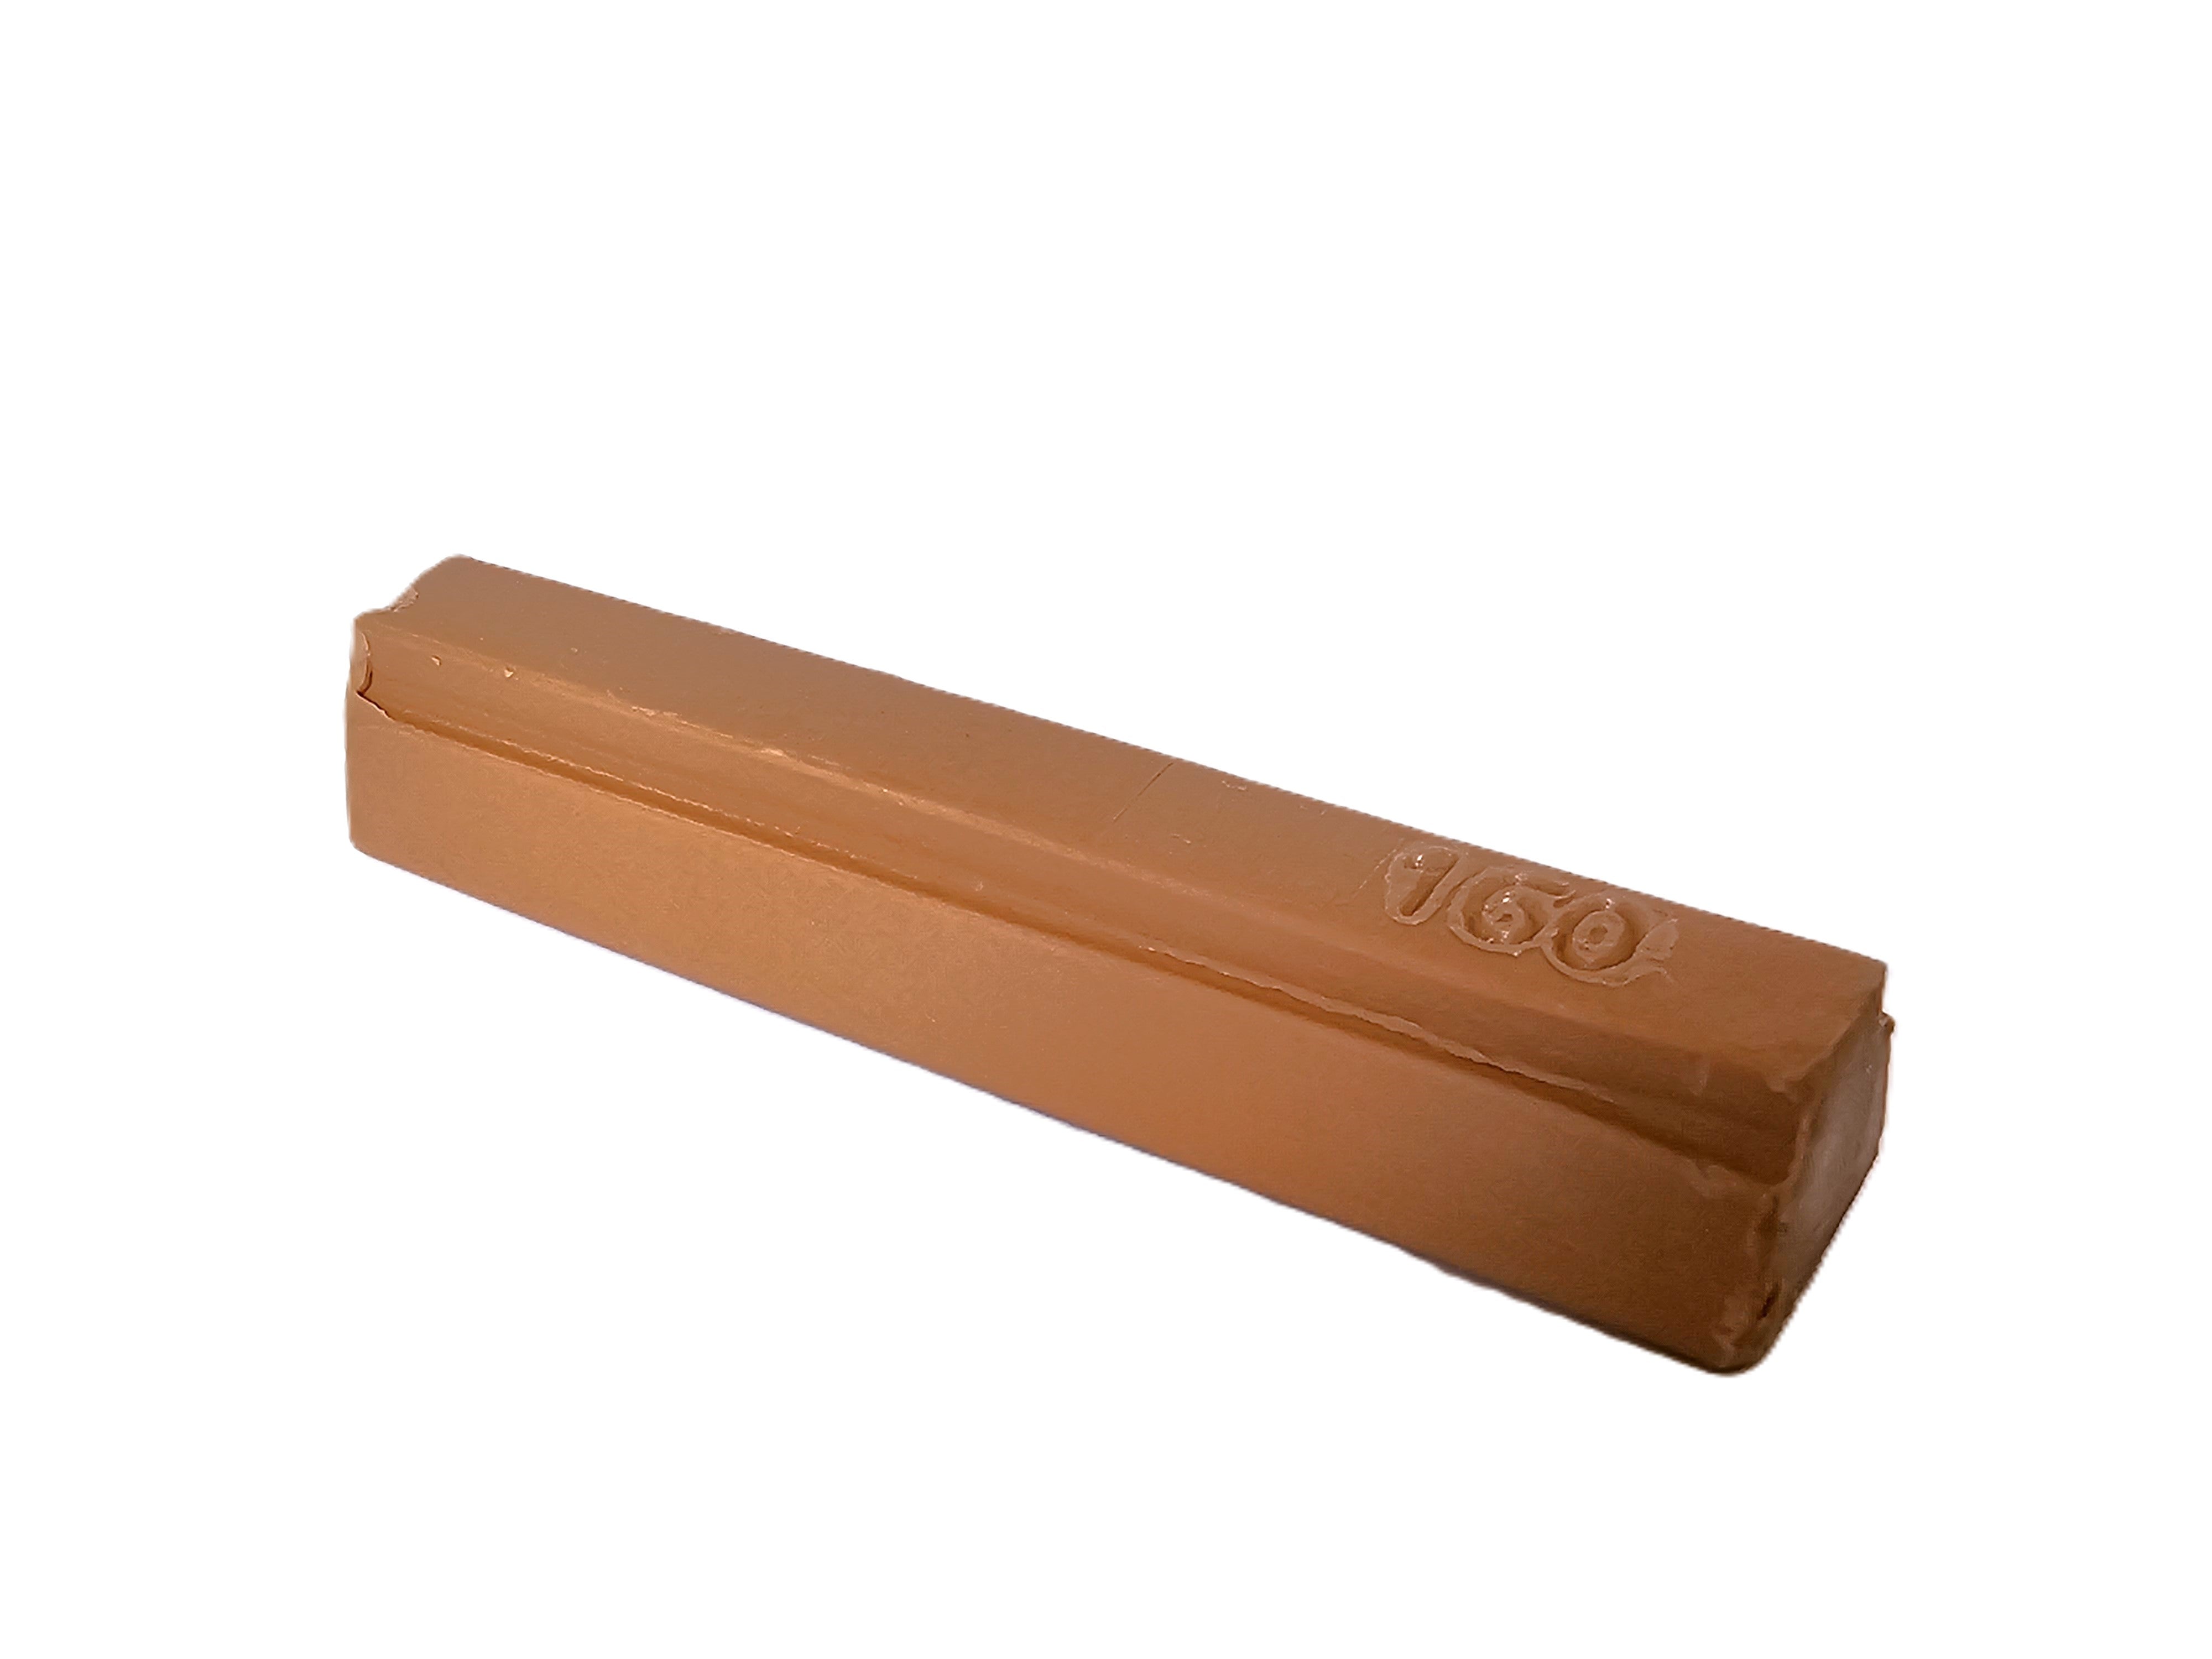 Konig 8cm Soft Wax or Hard Wax Filler Stick 160 MEDIUM ALDER